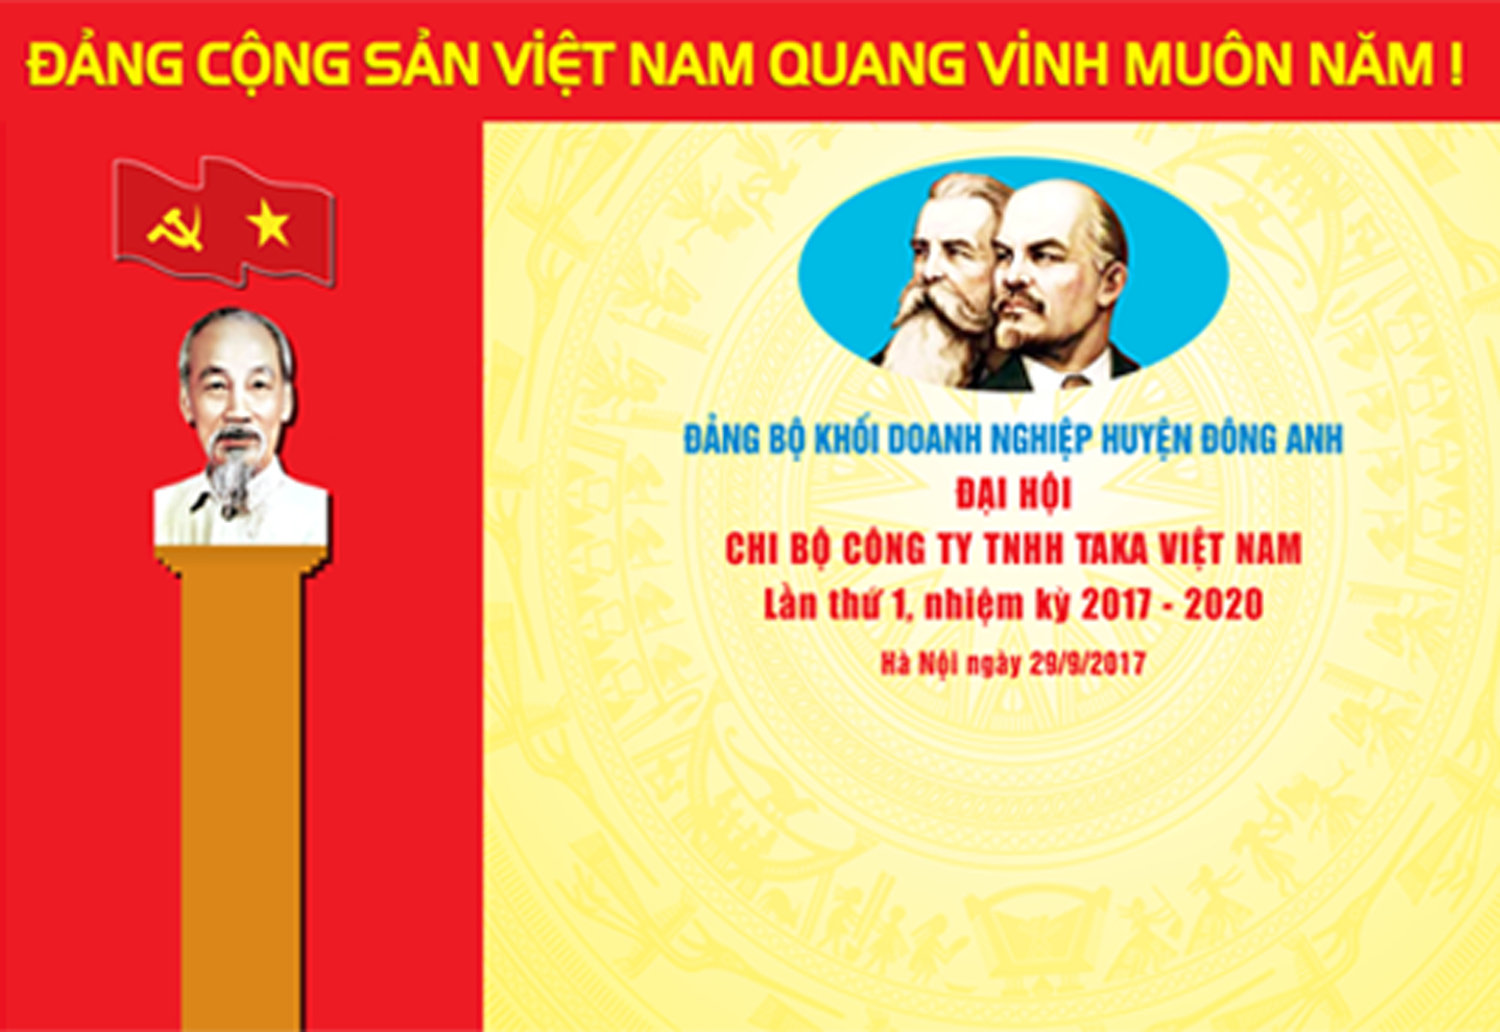 Đại hội Chi bộ Đảng Công ty TNHH Taka Việt Nam